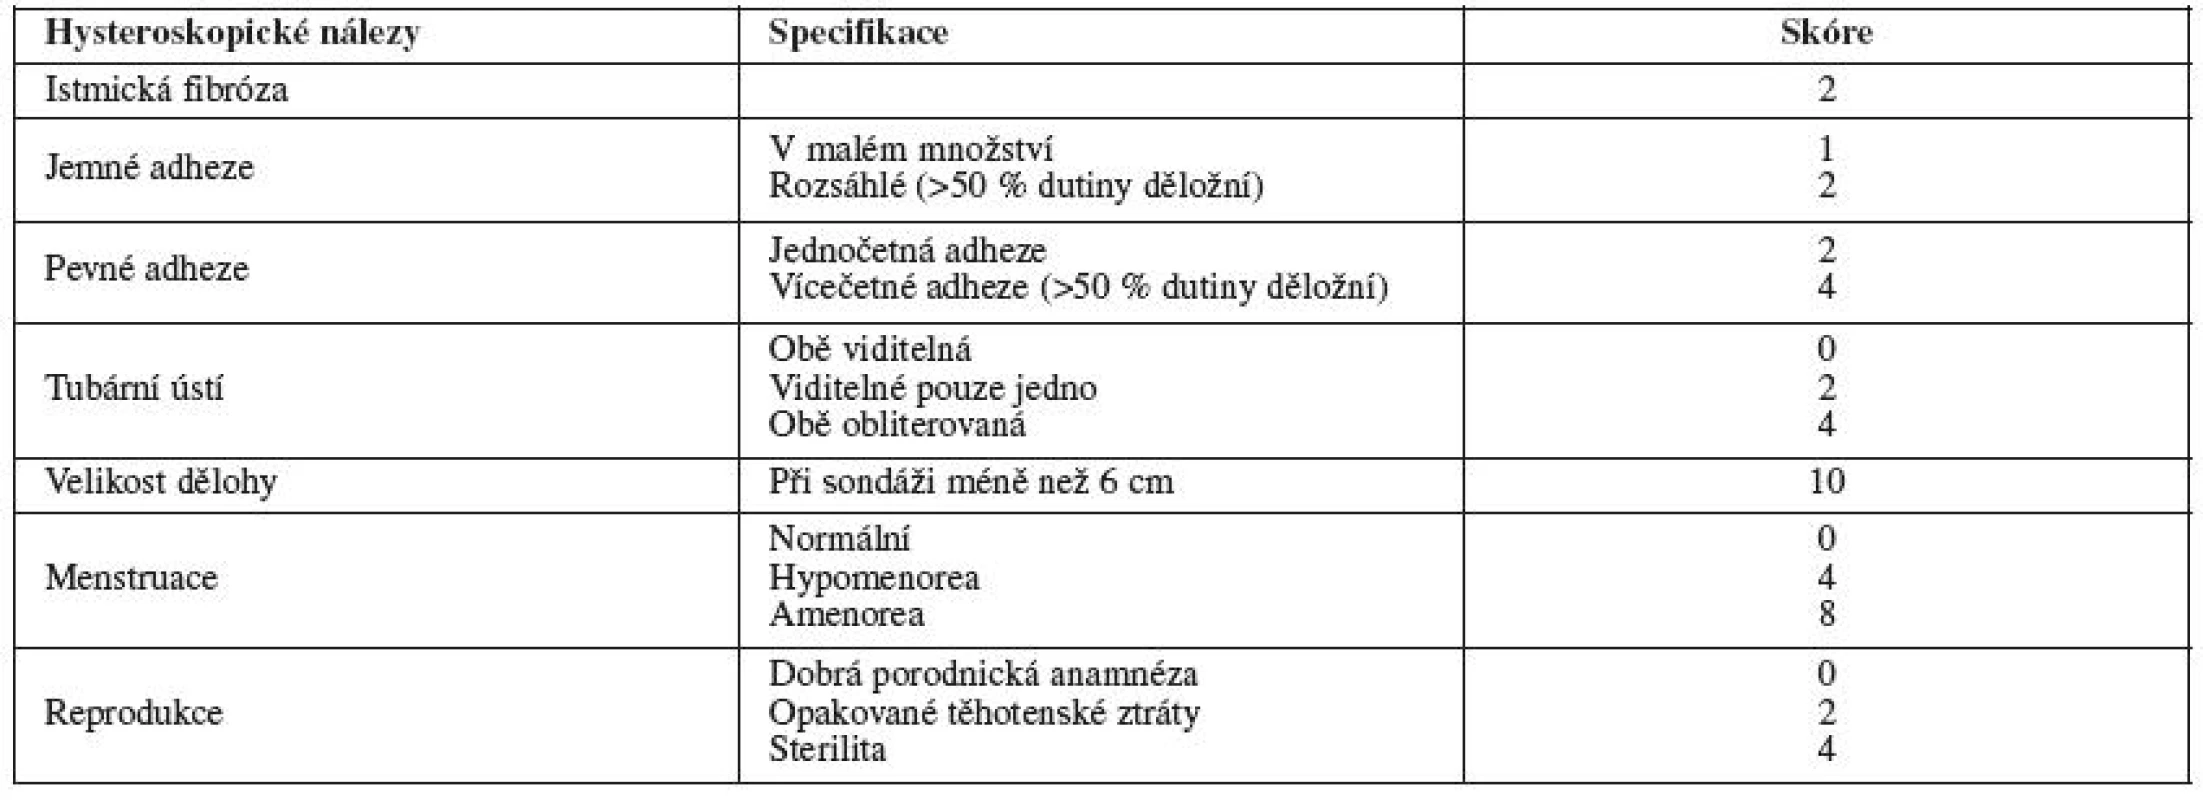 Hysteroskopicko-klinická klasifikace (Nasr, 2000)
